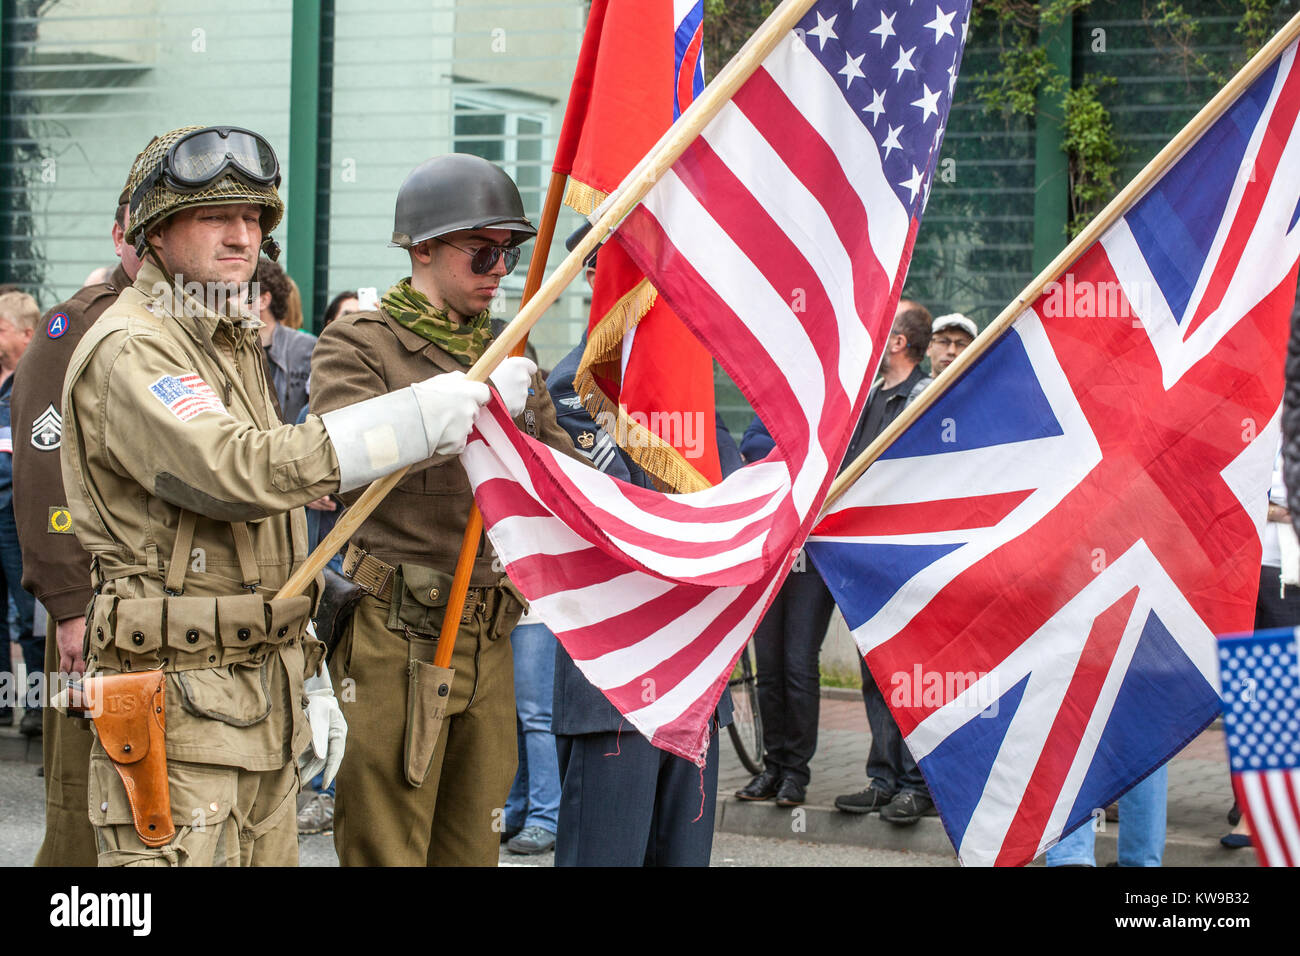 Celebraciones de la ciudad liberada, Plzen Ciudad Checa, Pilsen República Checa WW2 soldados estadounidenses Foto de stock